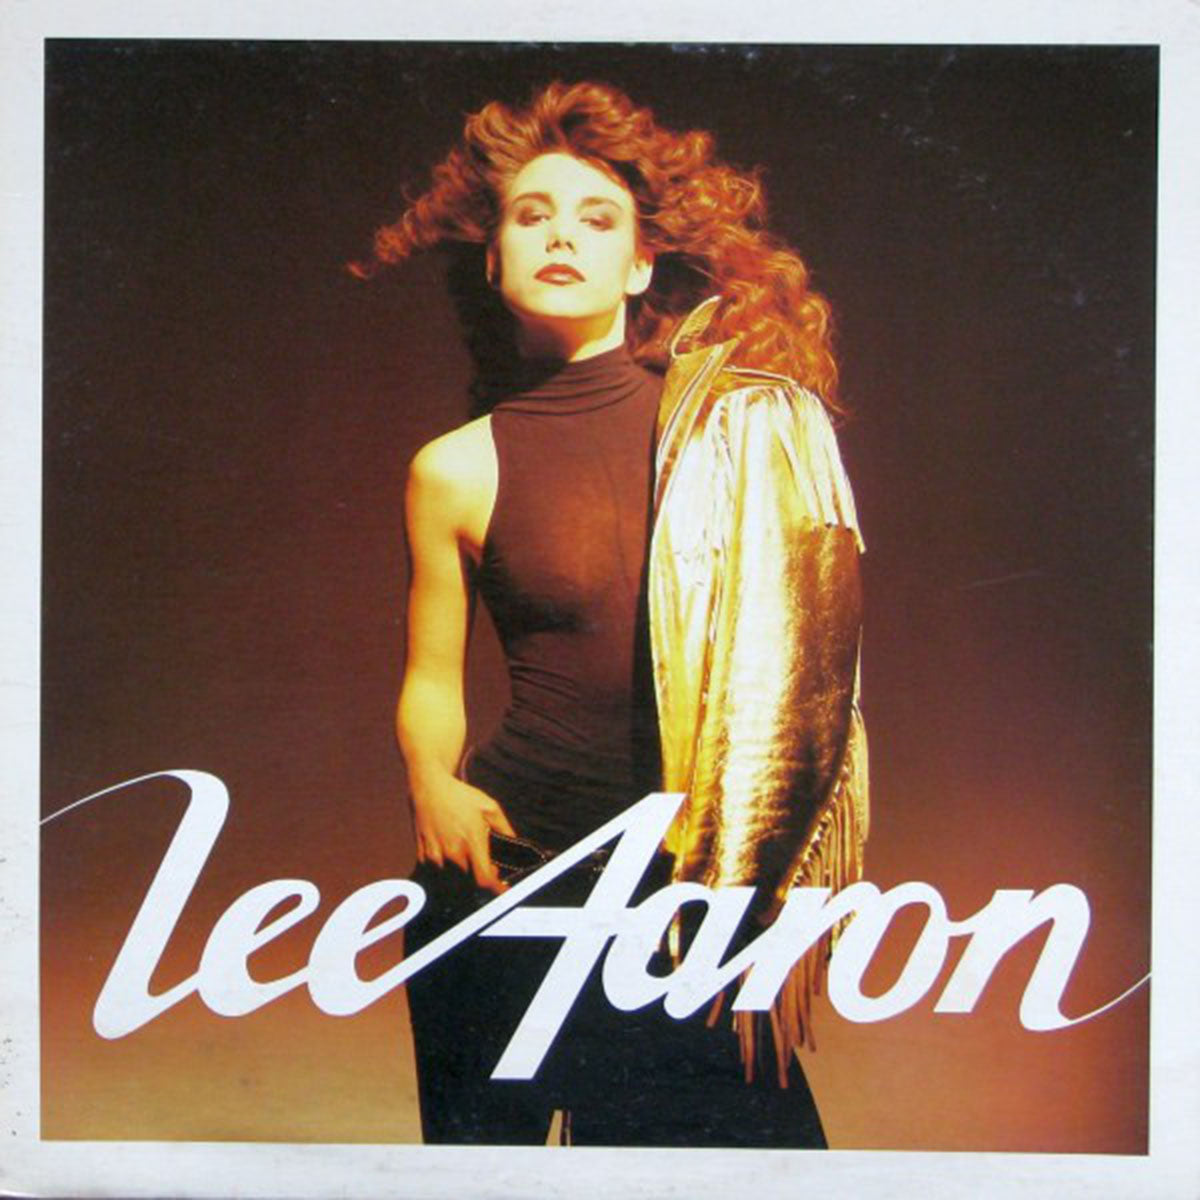 Lee Aaron – Lee Aaron - 1987 DMM Pressing in Shrinkwrap!